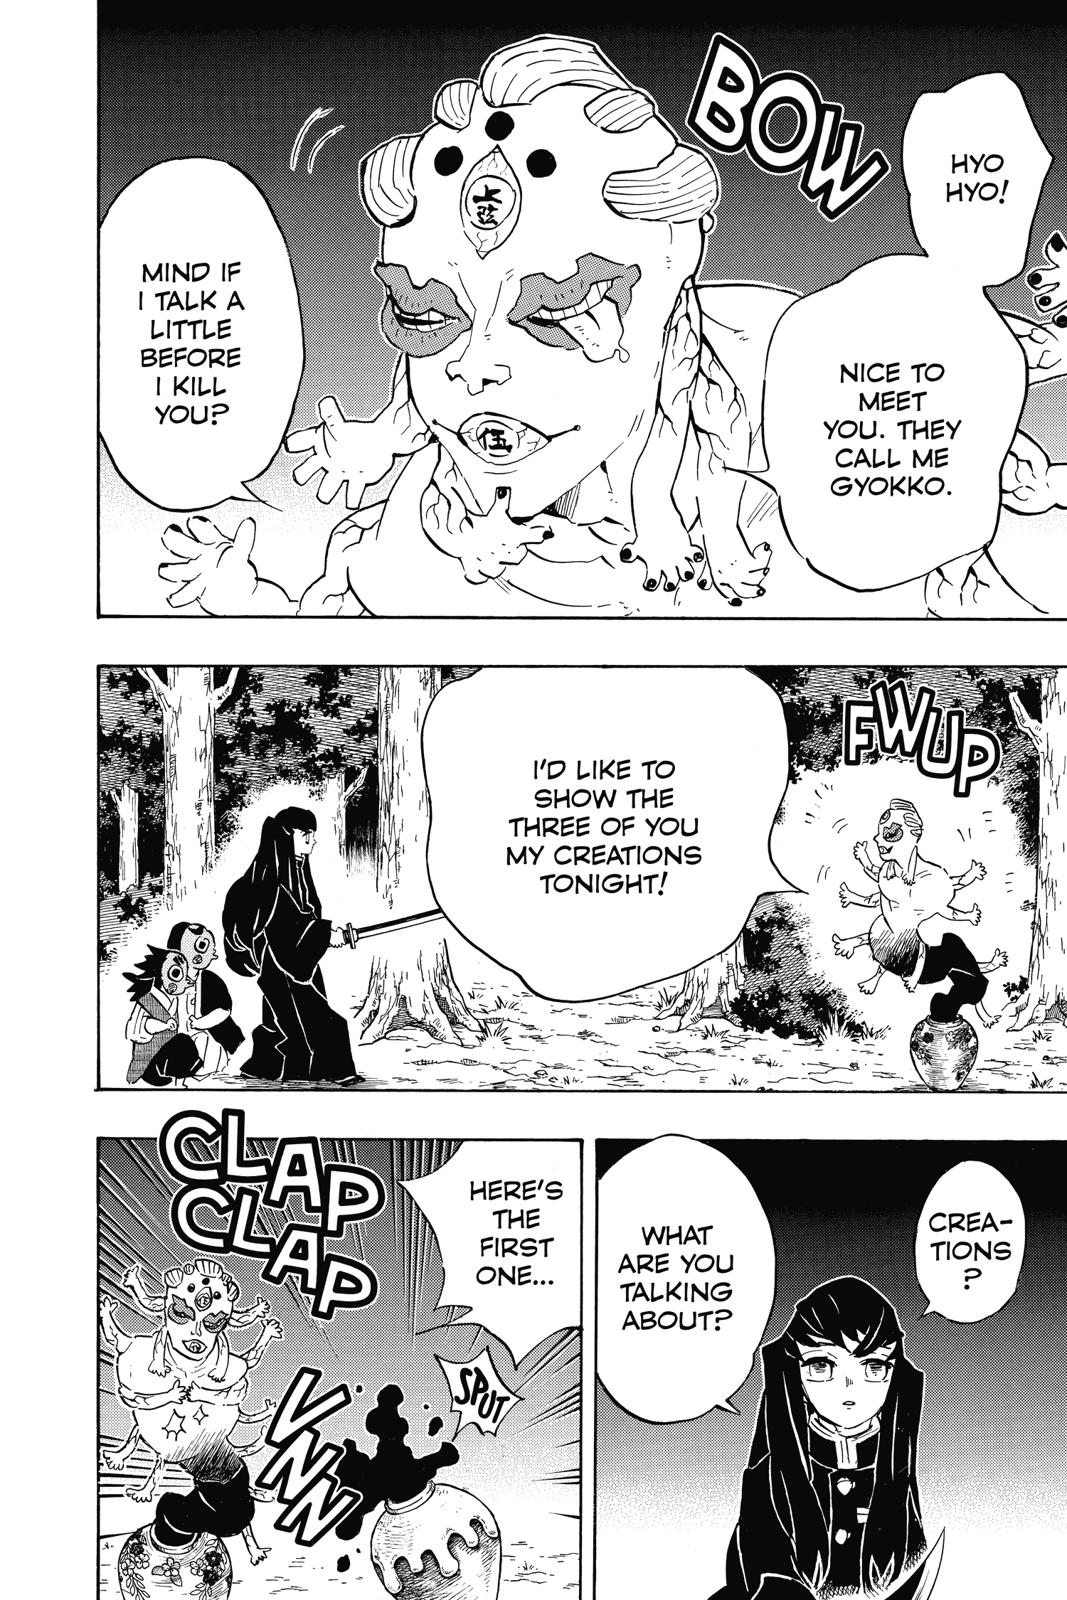 Demon Slayer Manga Manga Chapter - 111 - image 2